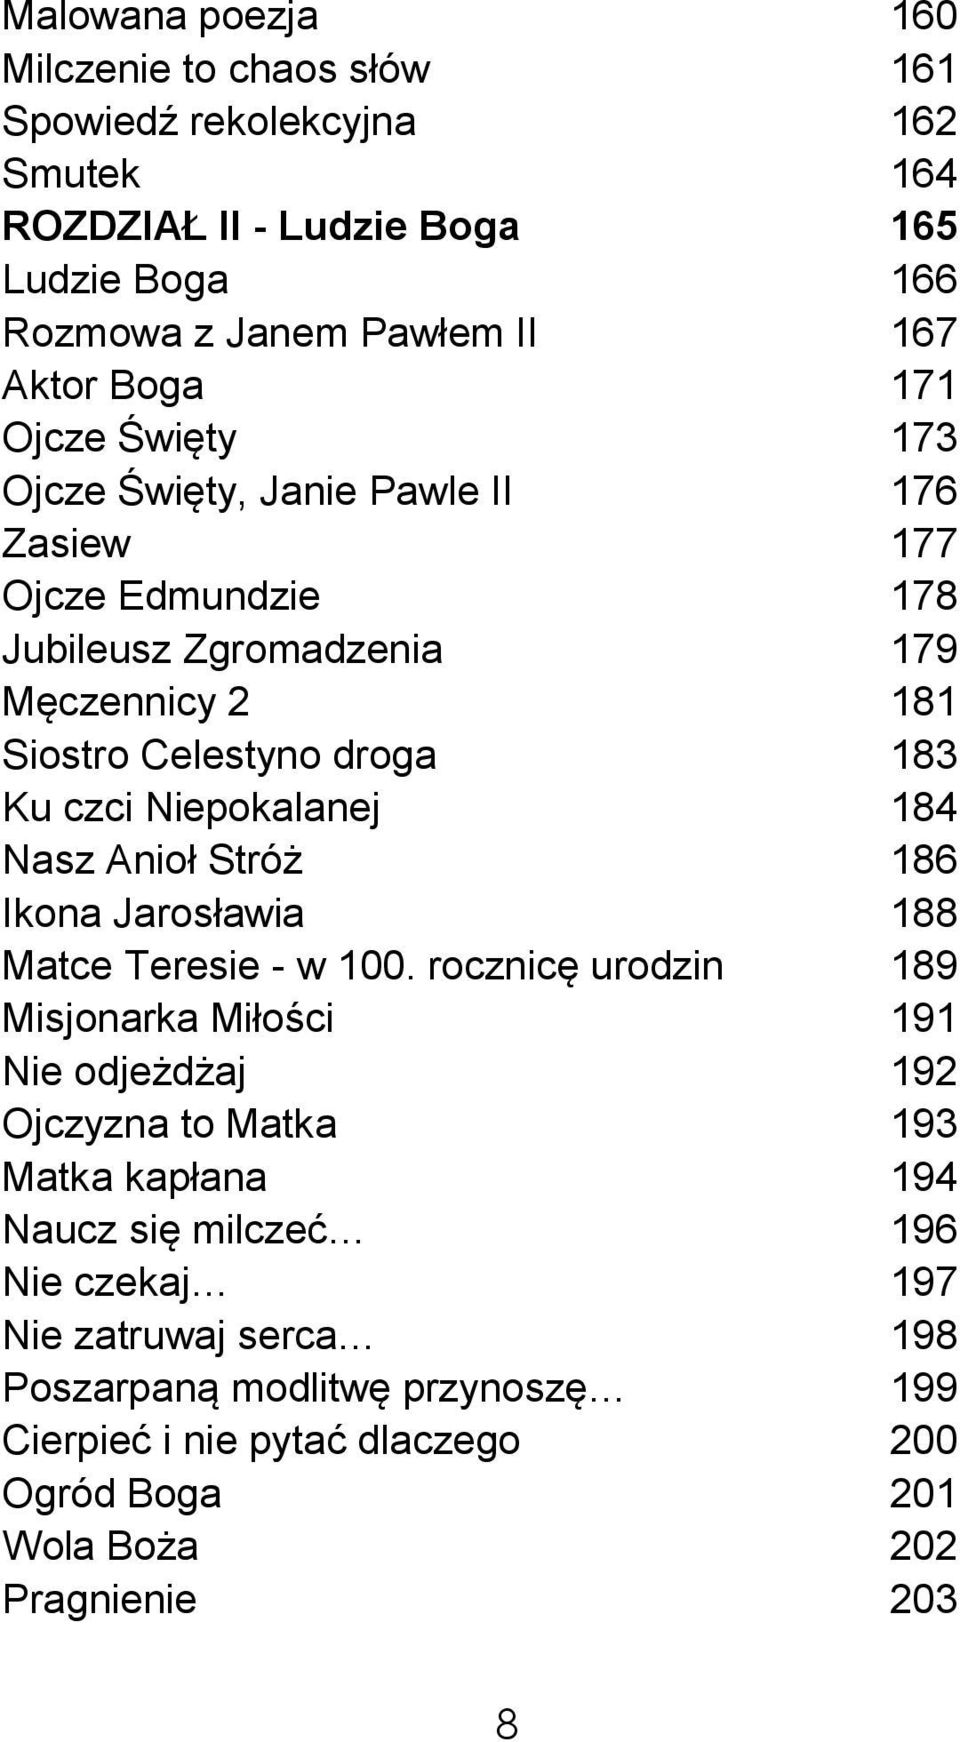 Niepokalanej 184 Nasz Anioł Stróż 186 Ikona Jarosławia 188 Matce Teresie - w 100.